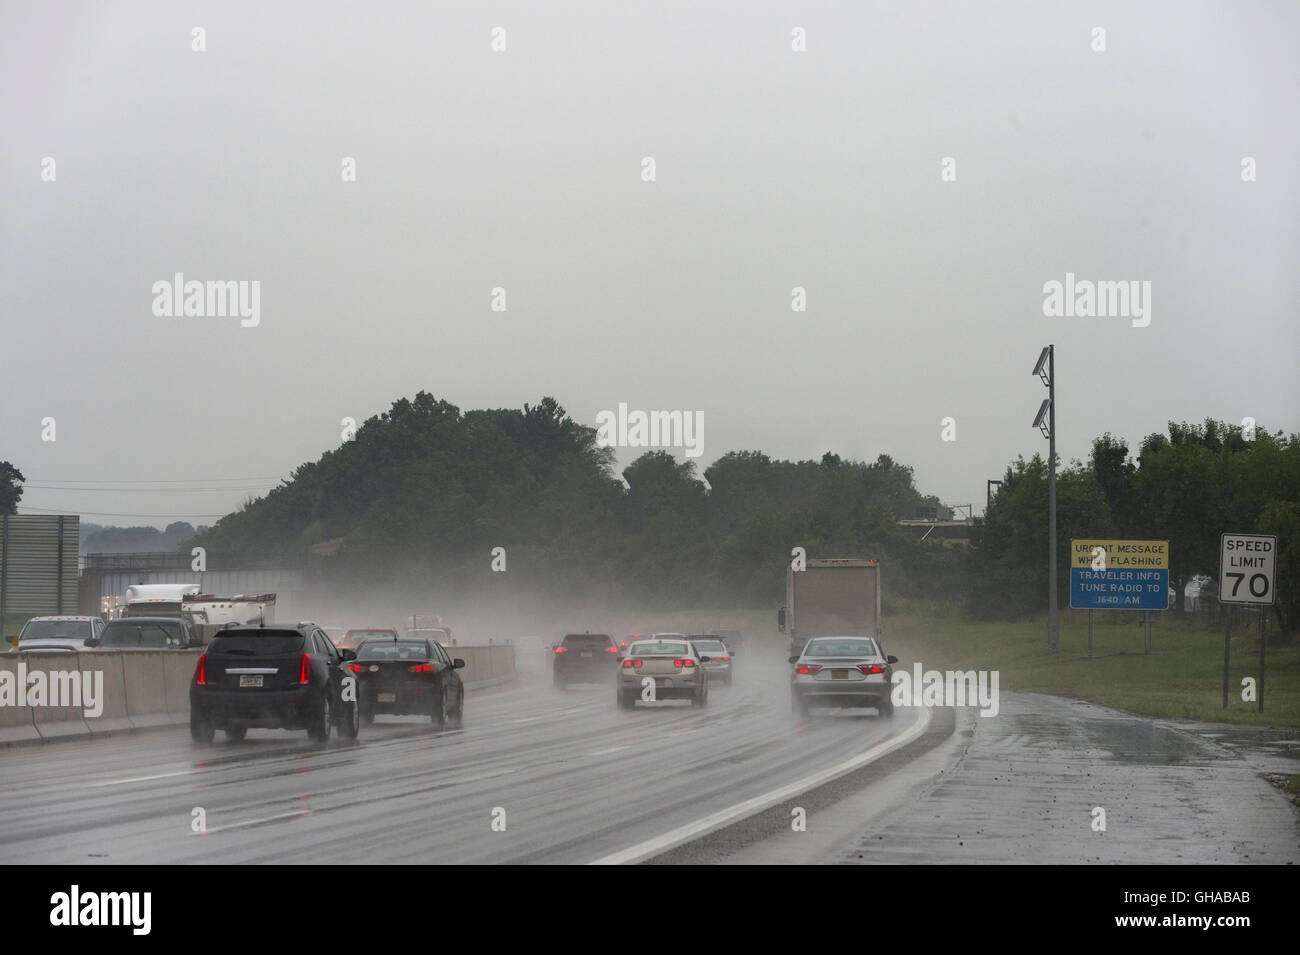 Le trafic routier dans la tempête de pluie Banque D'Images